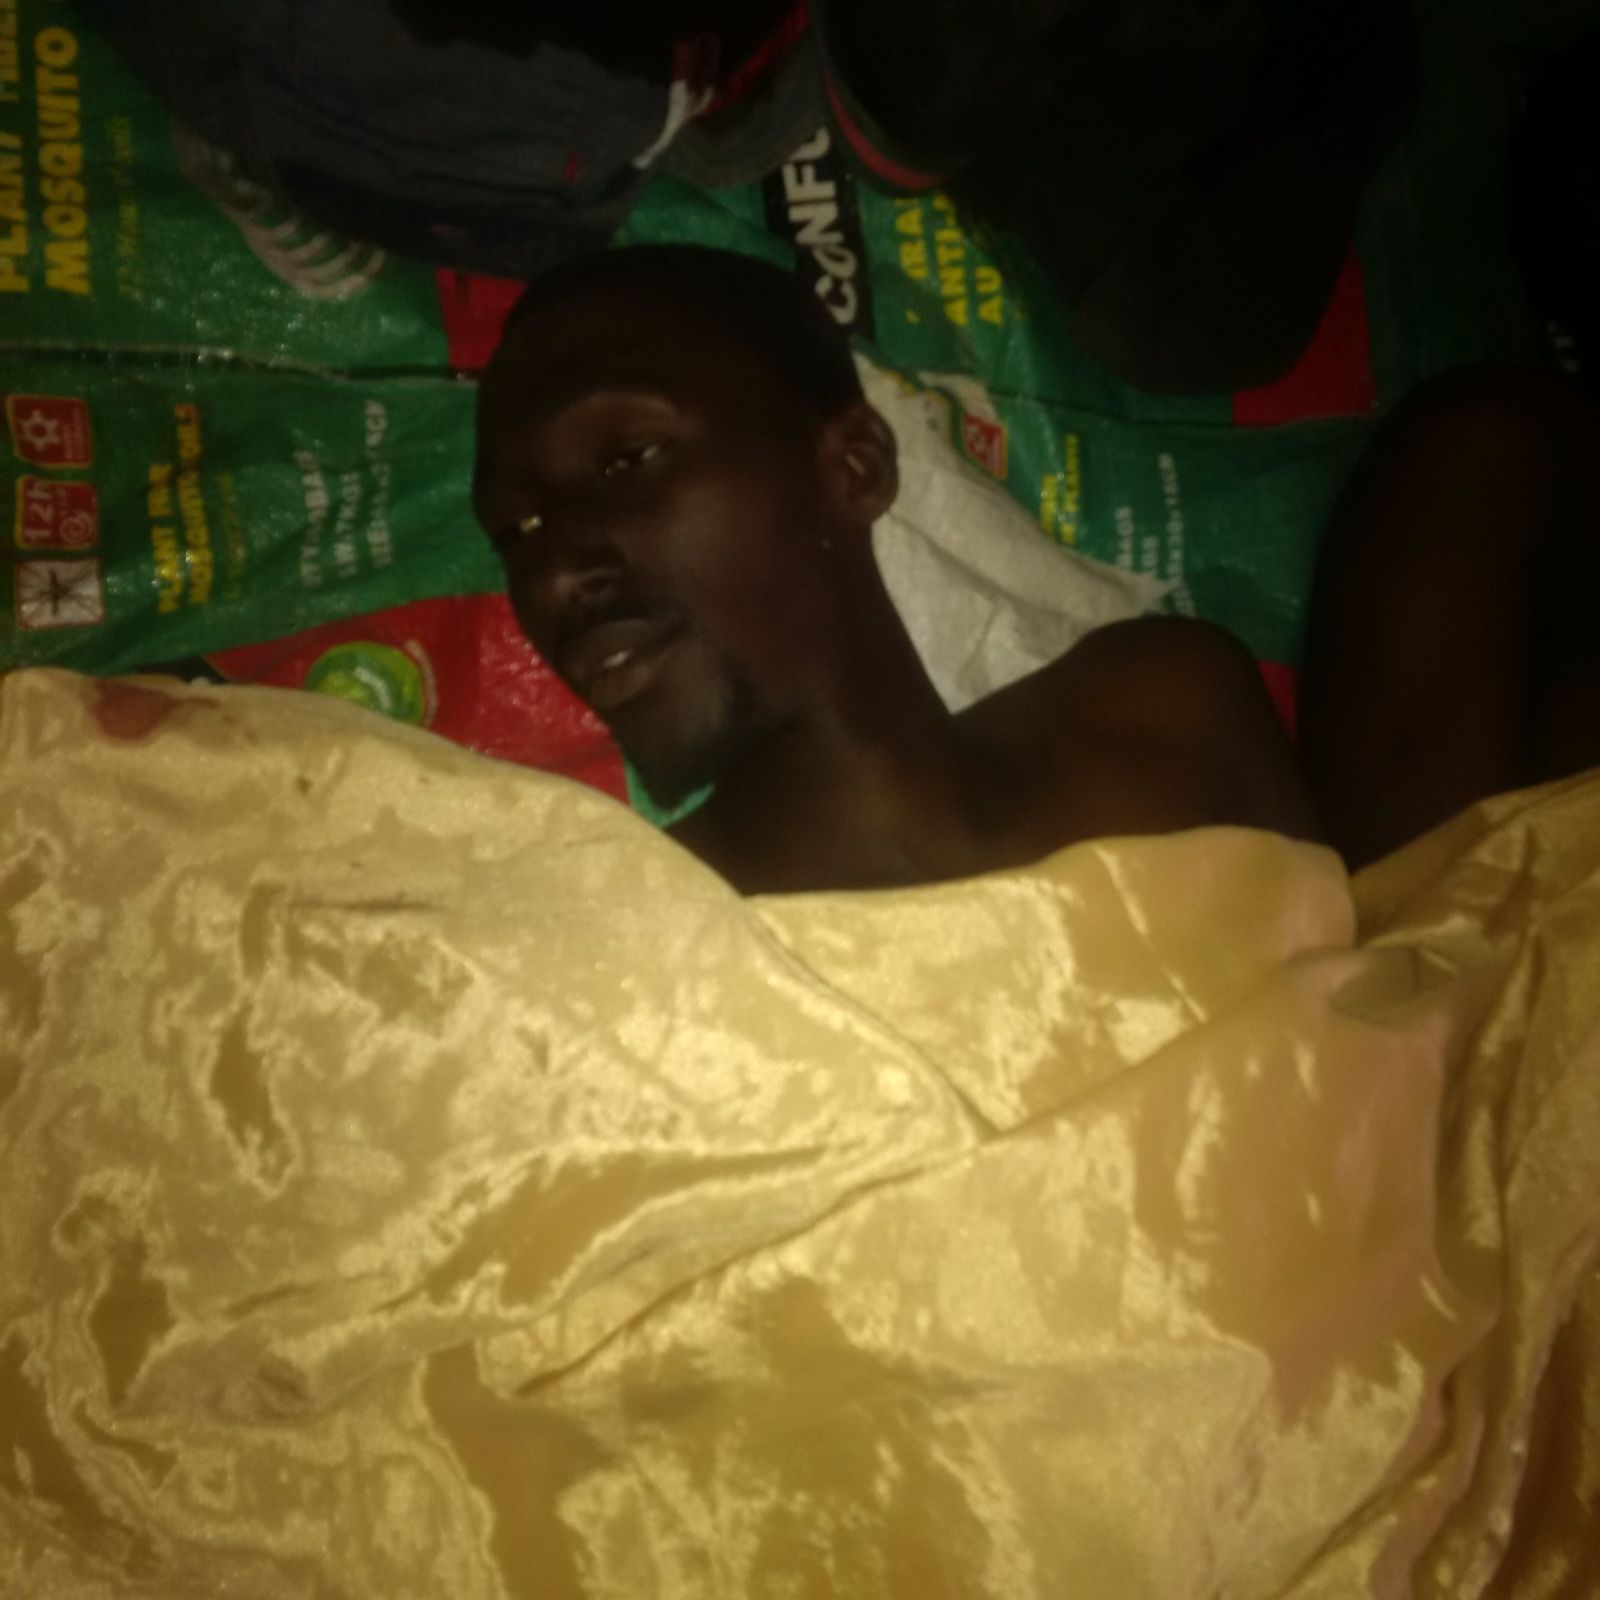 حمله مرگبار به منزل رهبر شیعیان نیجریه + عکس